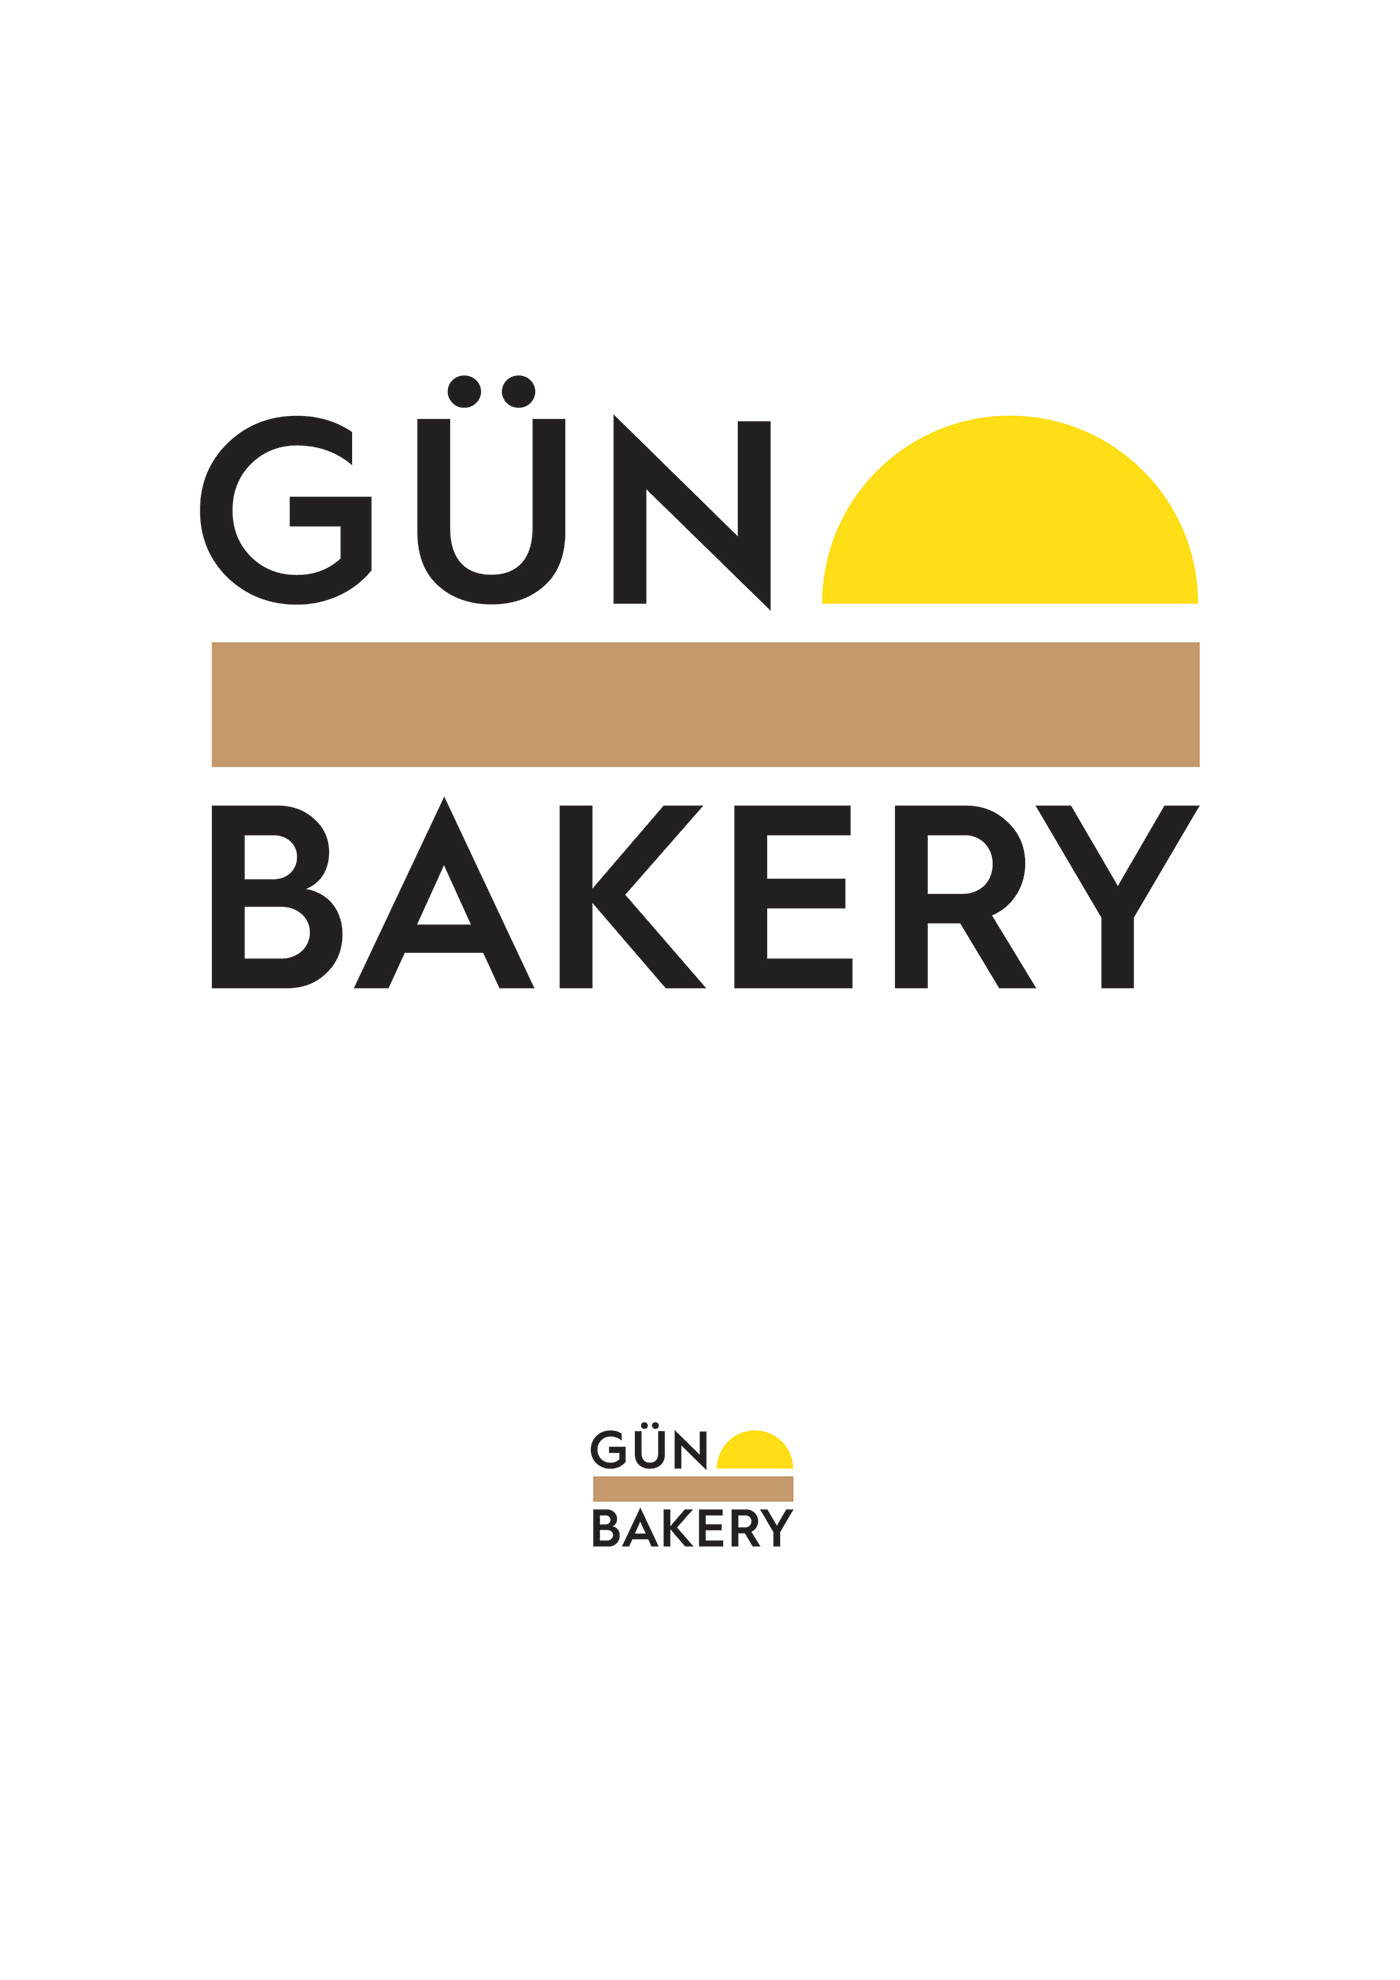 Bakery brand logo